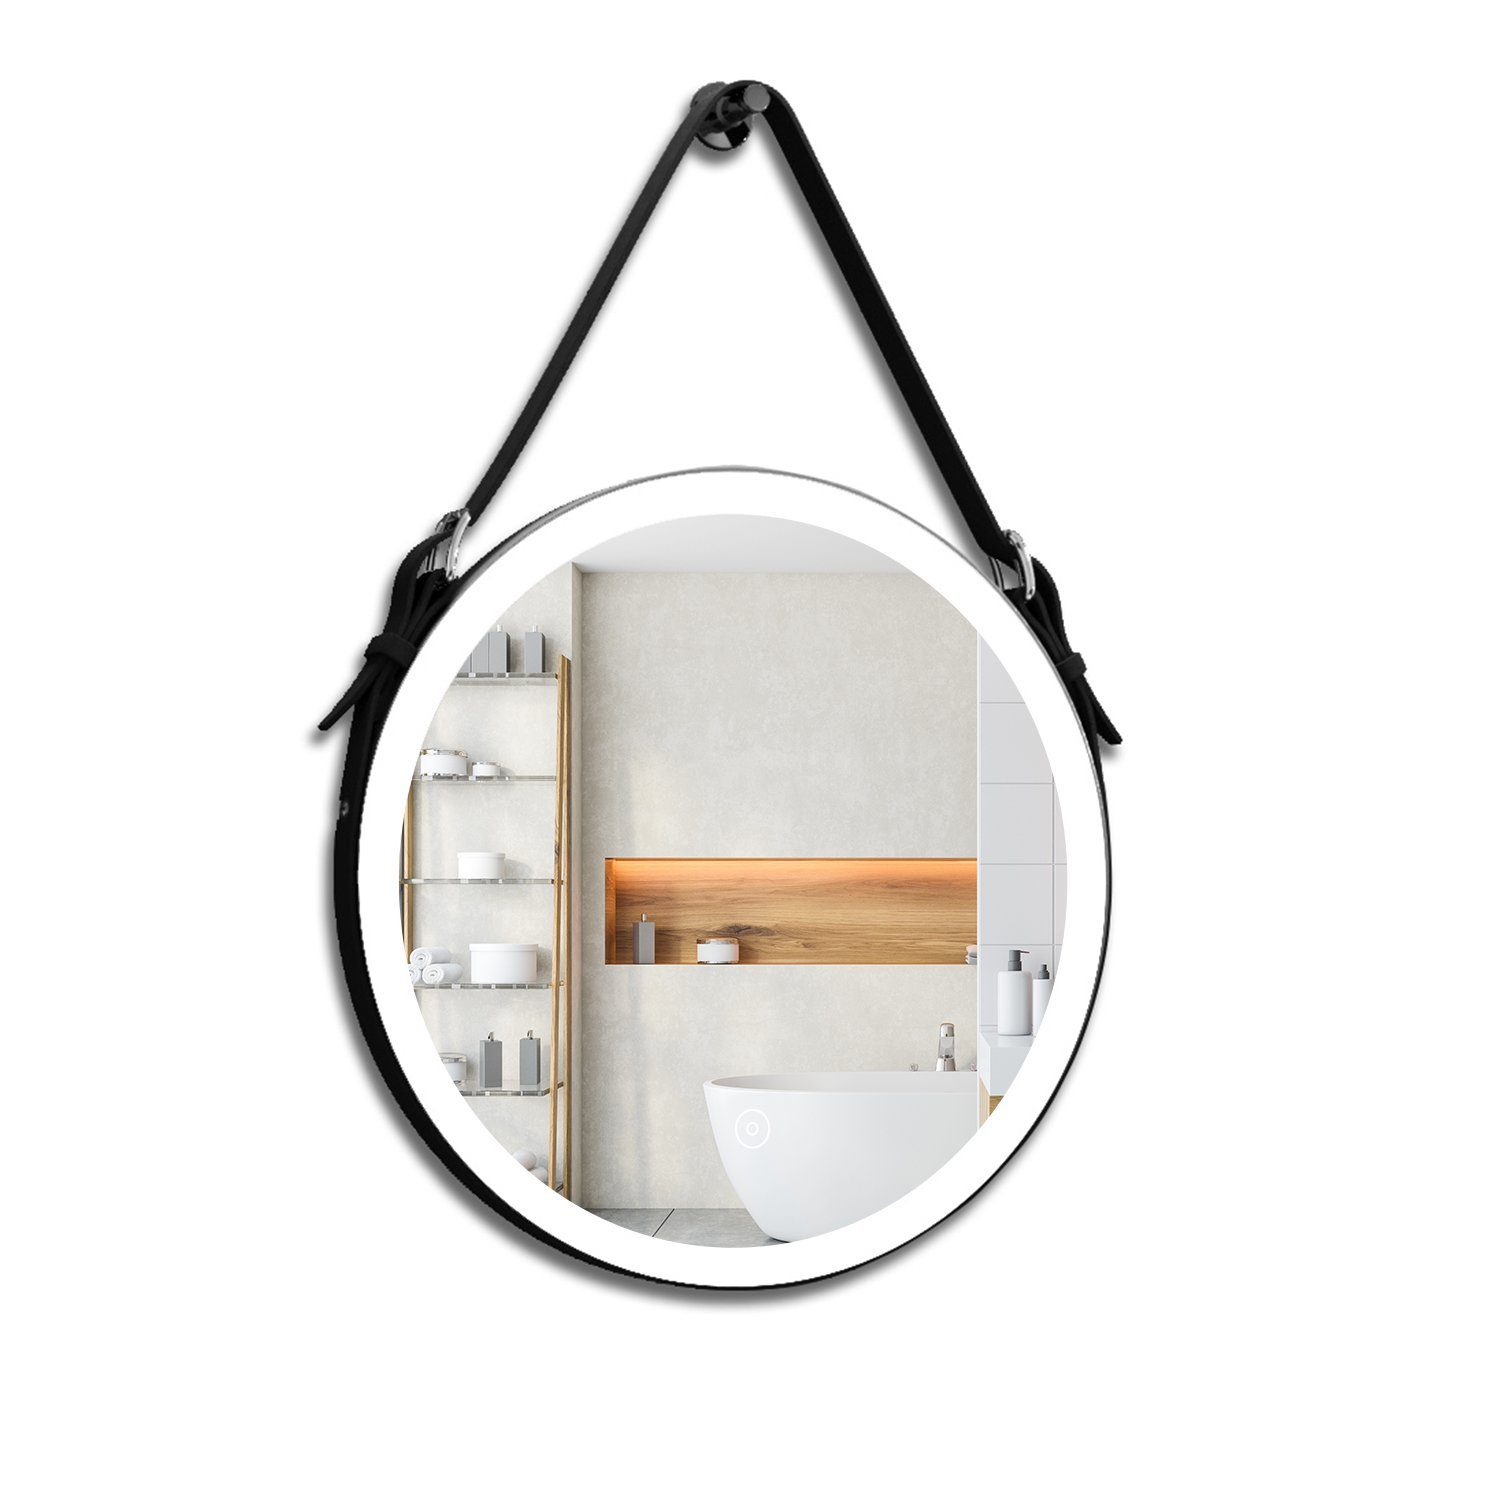 SONNI Badspiegel Rund Badspiegel mit LED Beleuchtung Badezimmerspiegel Ø 60 cm Touch, Beschlagfrei,Verstellbarer, Touchschalter Modern Schminkspiegel | Badspiegel